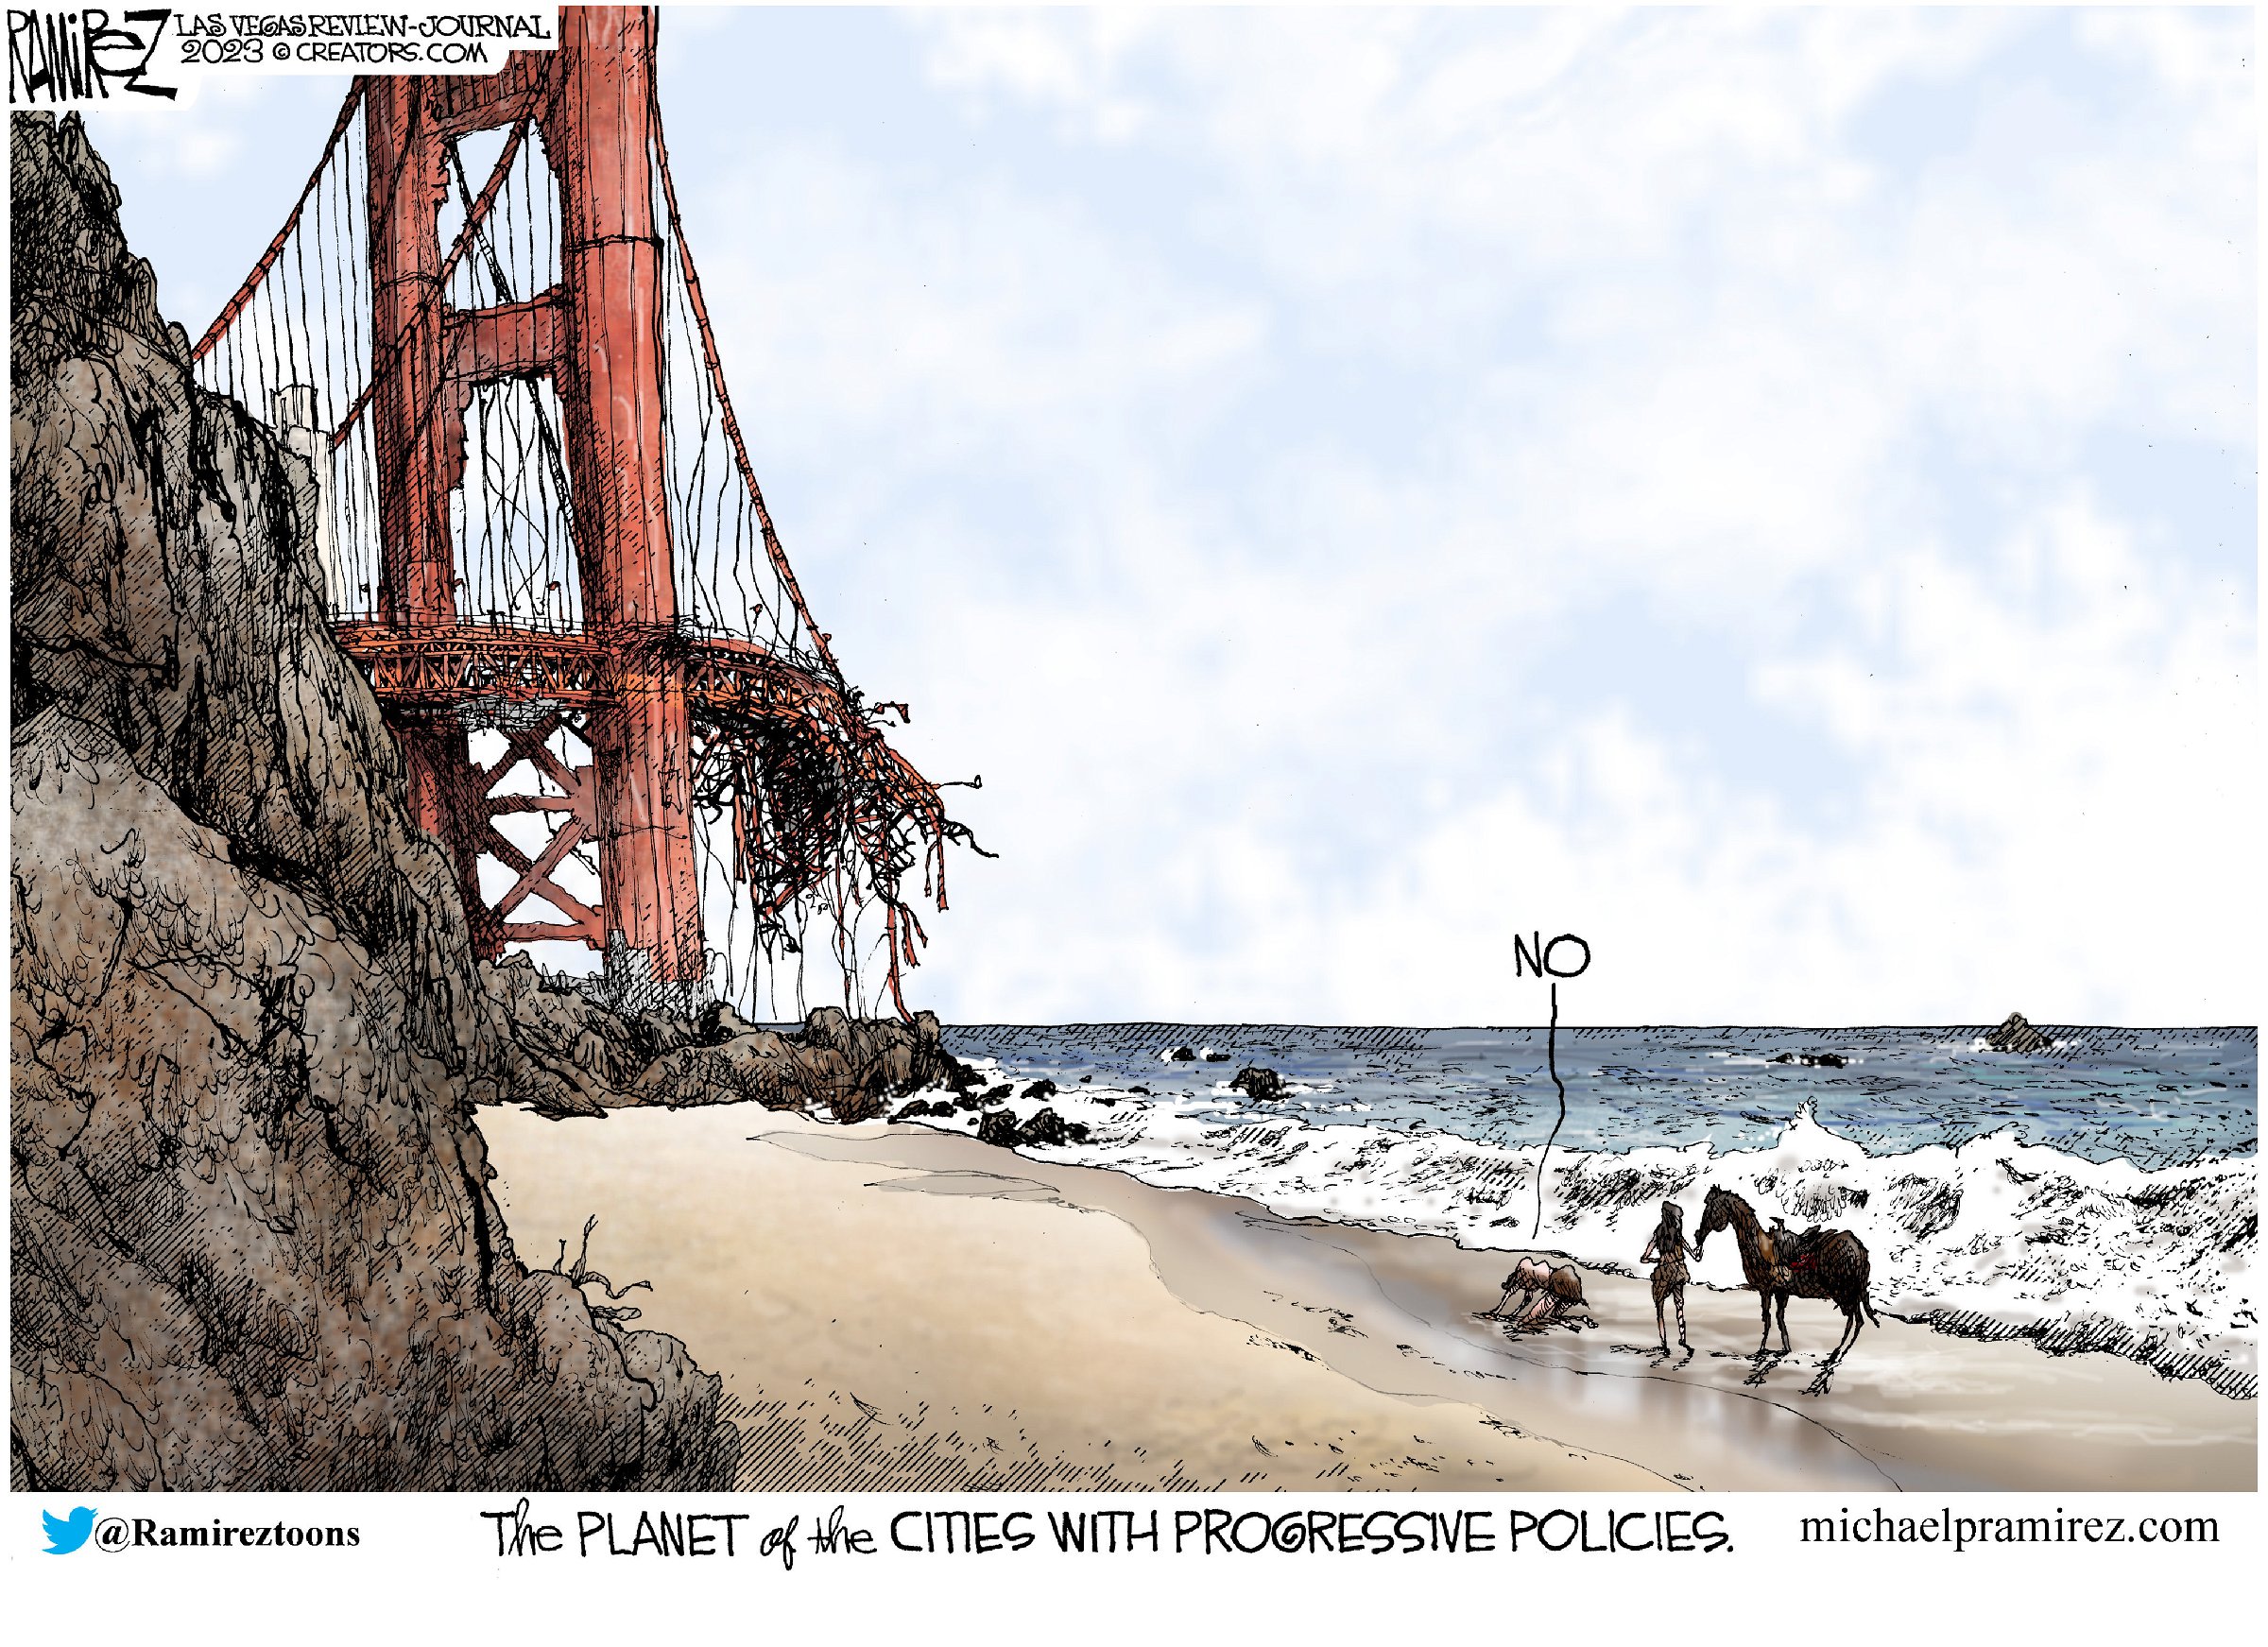 San Francisco democrat policies